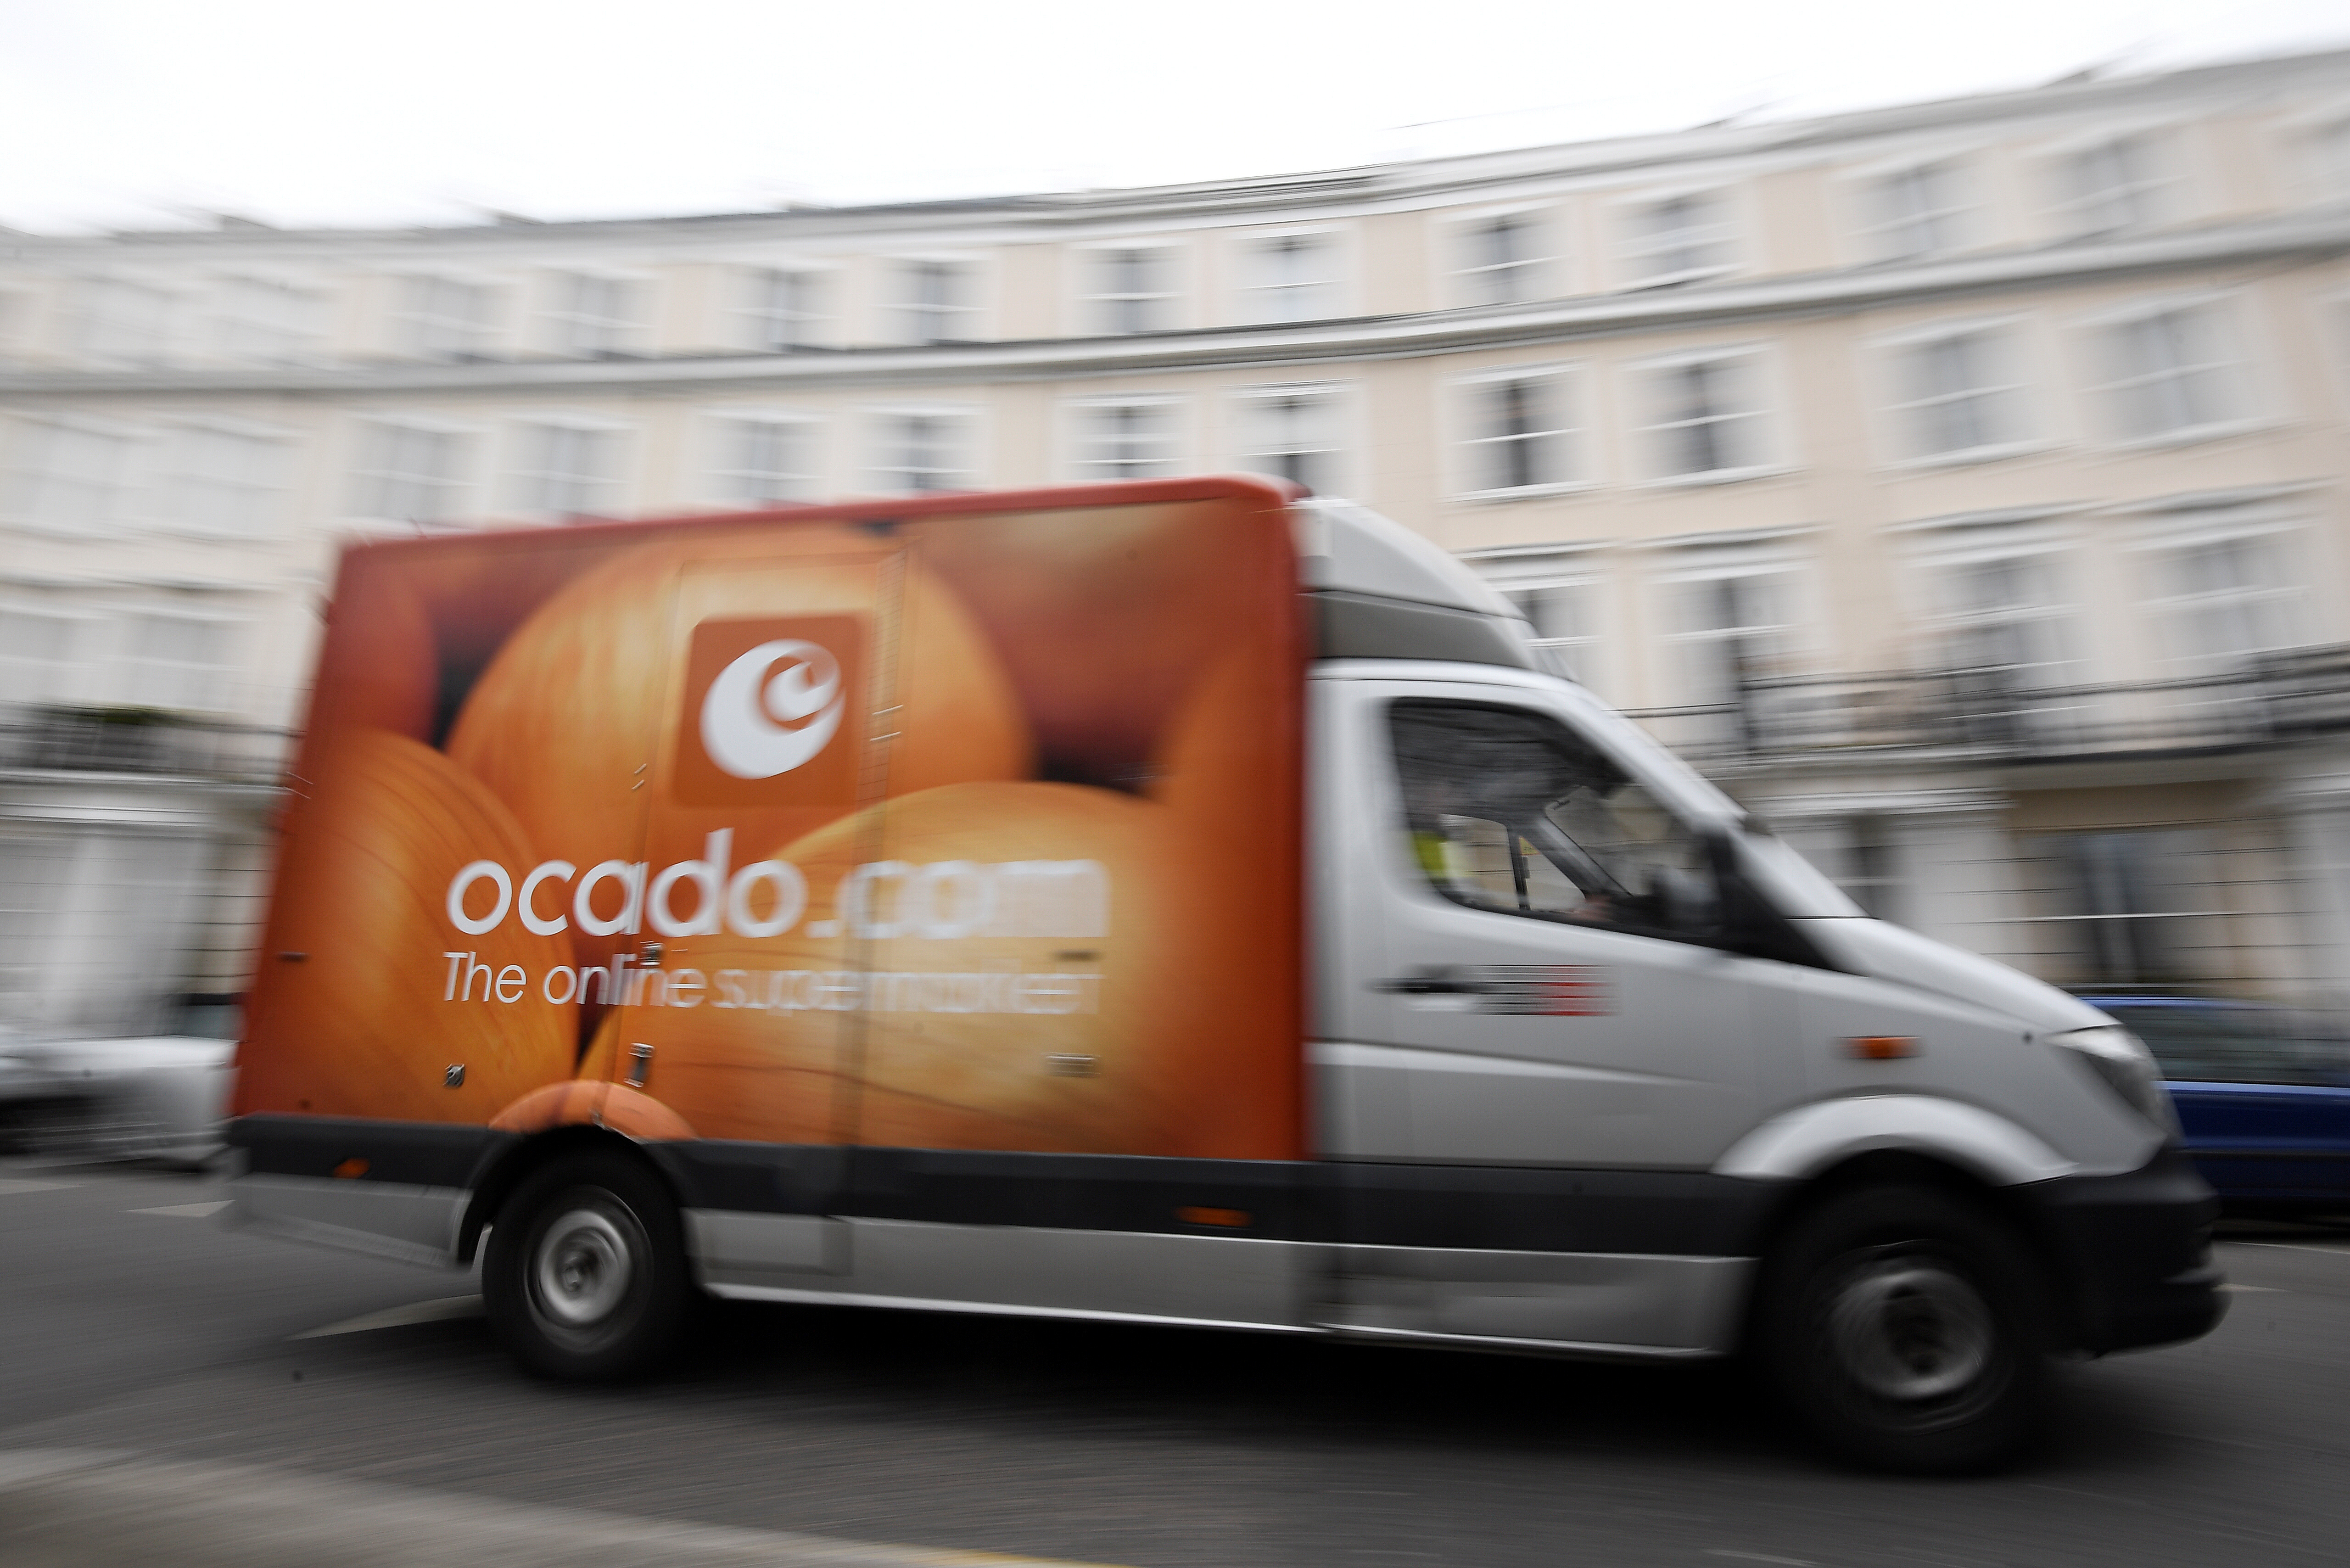 An ocado delivery van in London